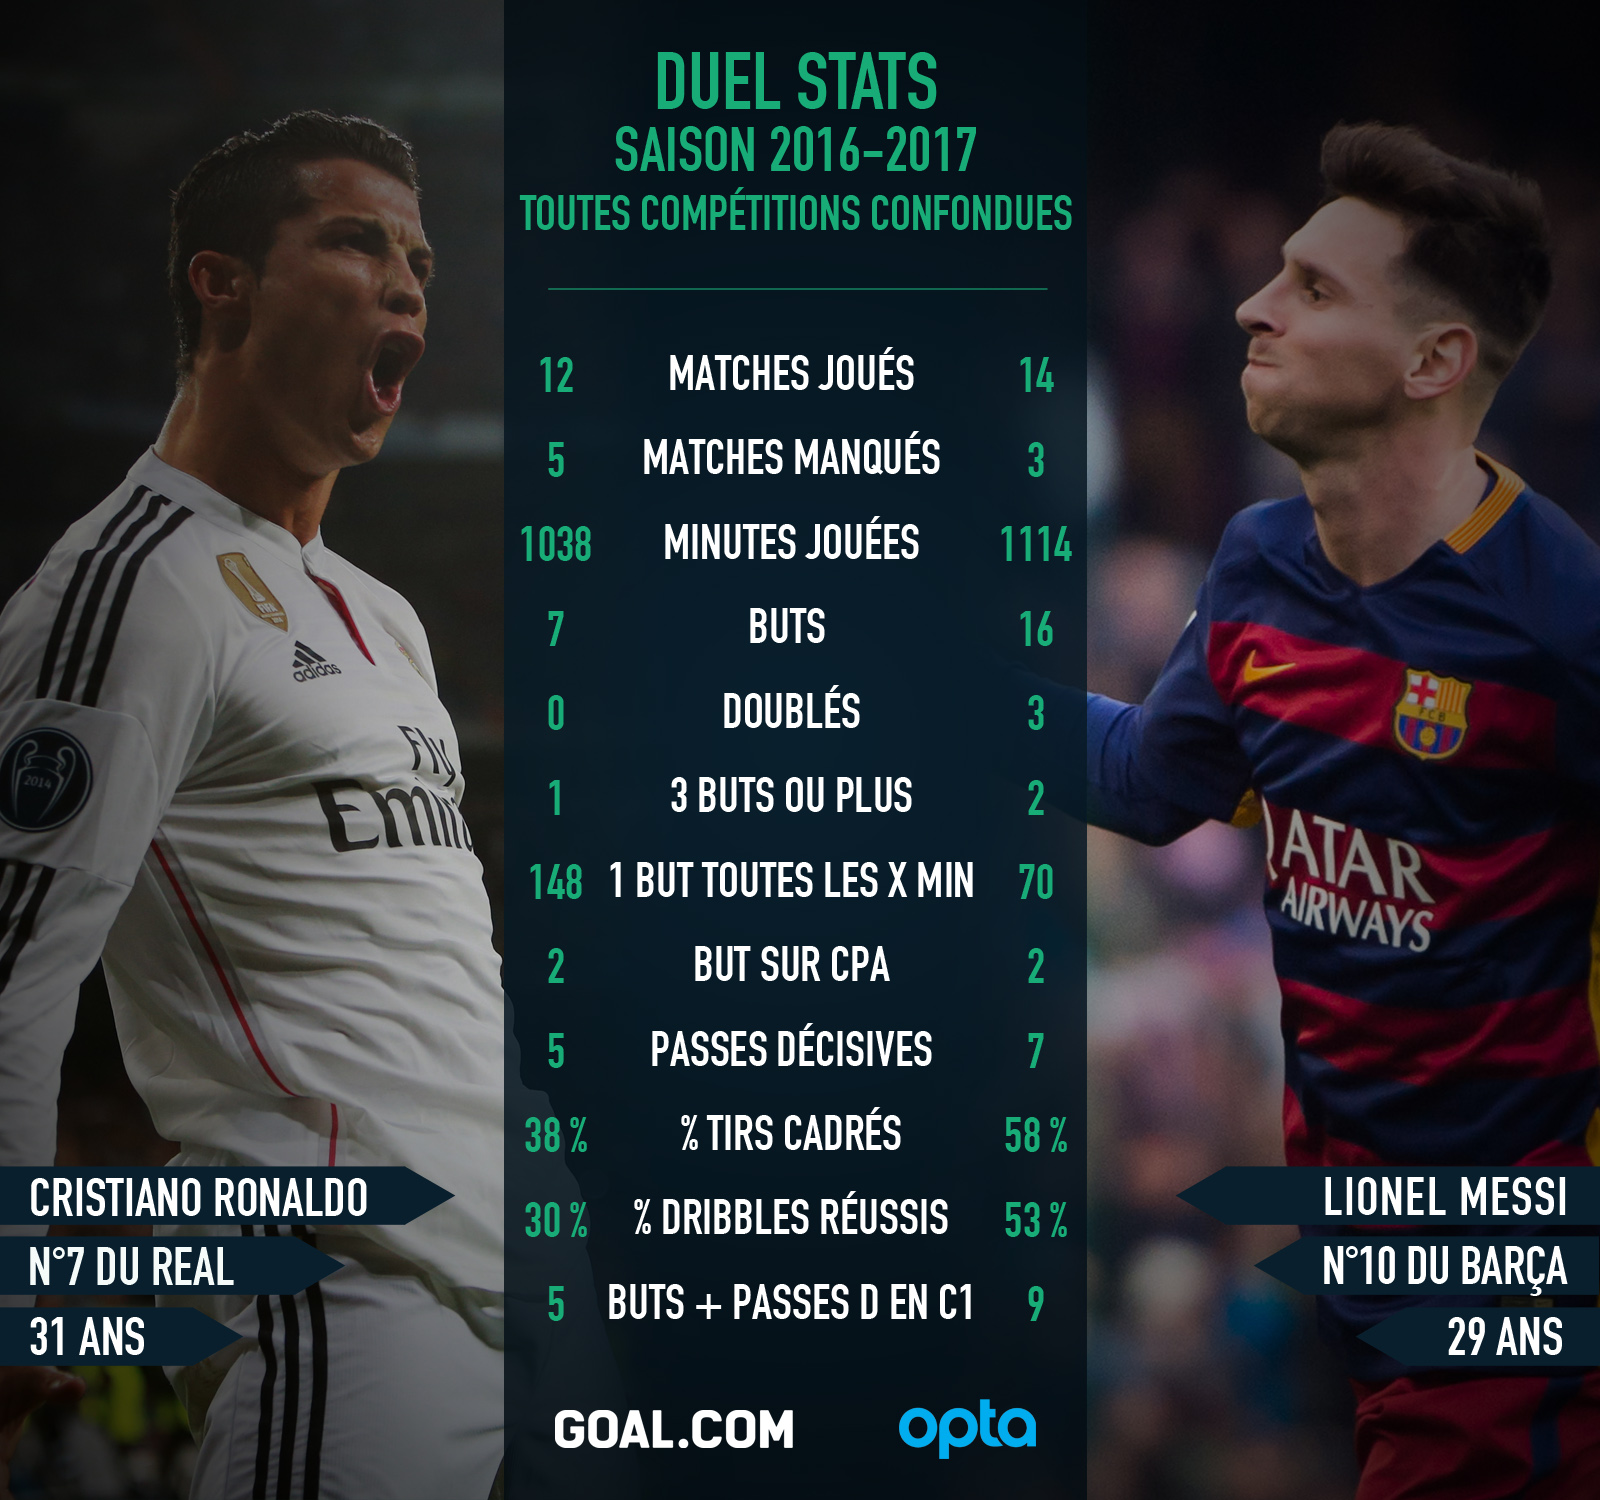 Messi Et Ronaldo Qui Est Le Plus Fort Goal Fait Le Bilan Avec Leurs Statistiques